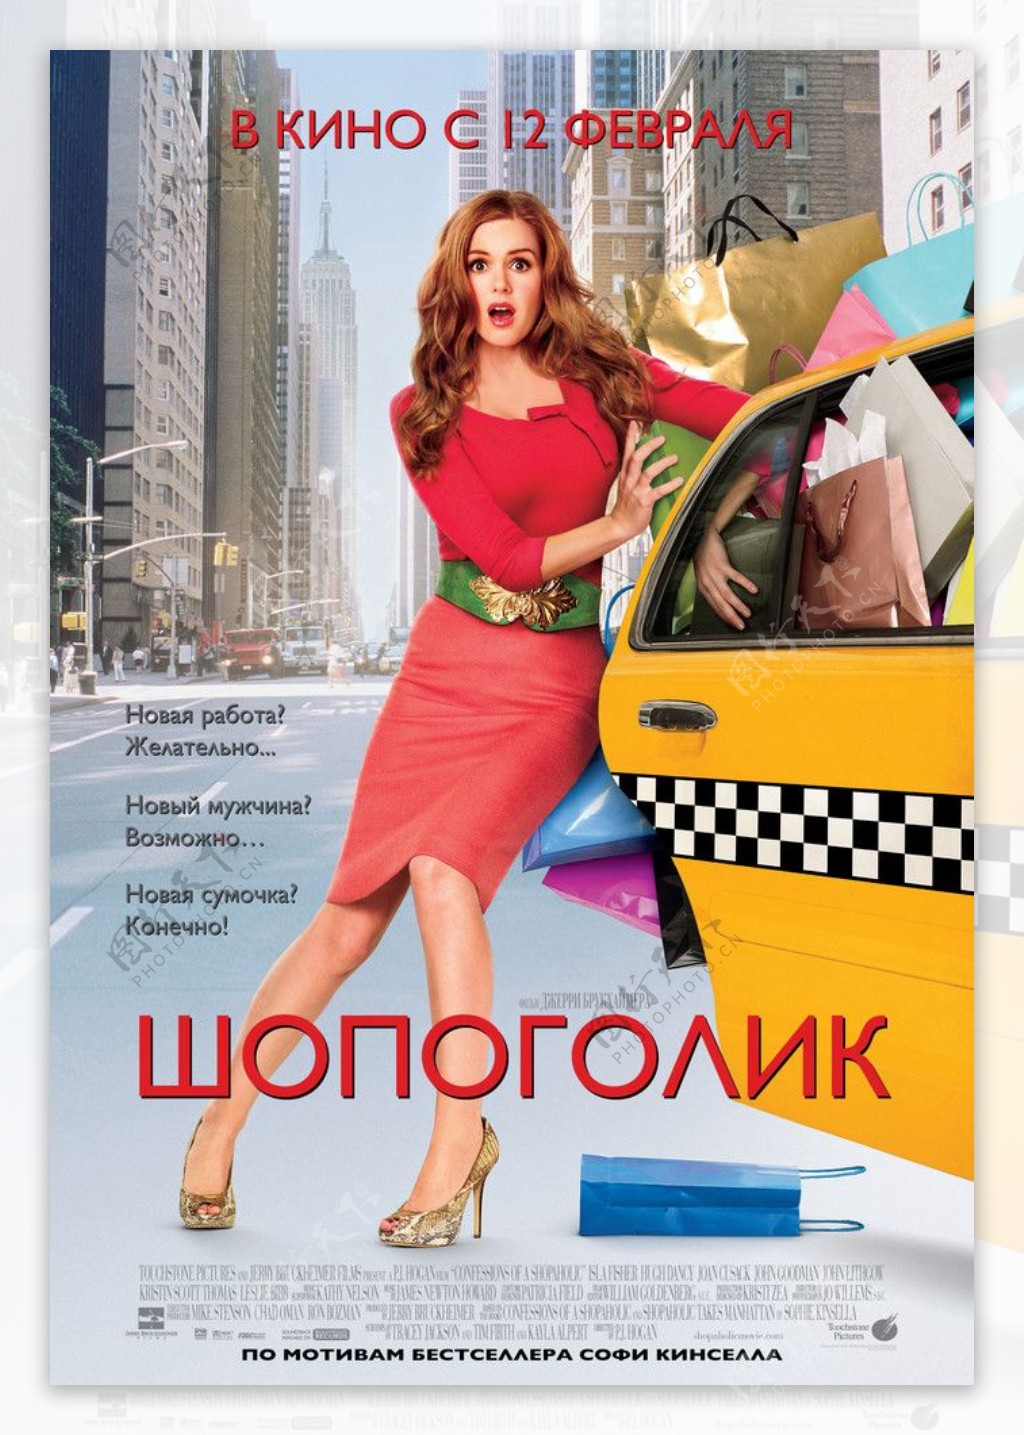 一个购物狂的自白高清海报俄文版图片